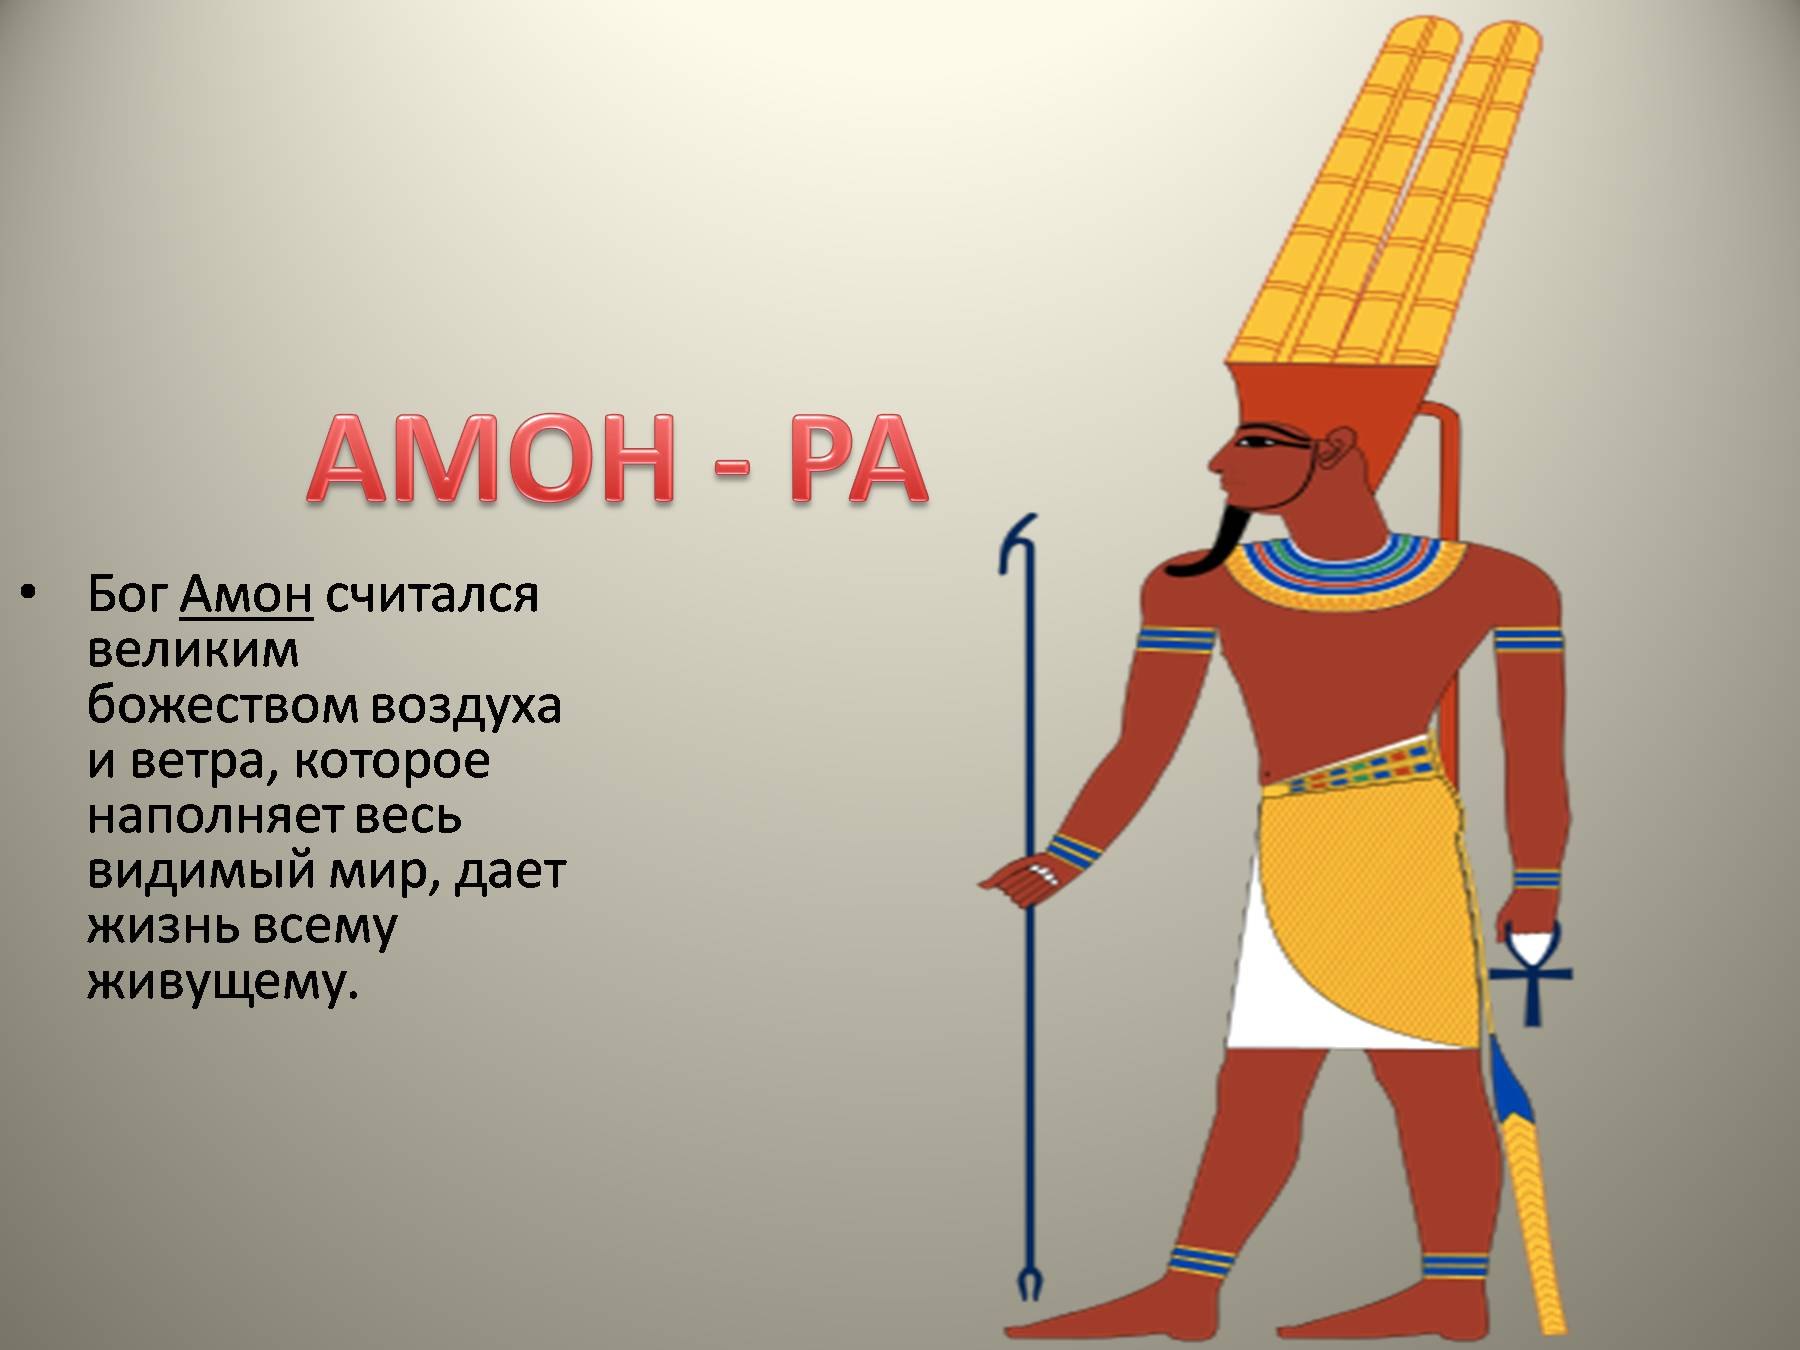 древний египет описание